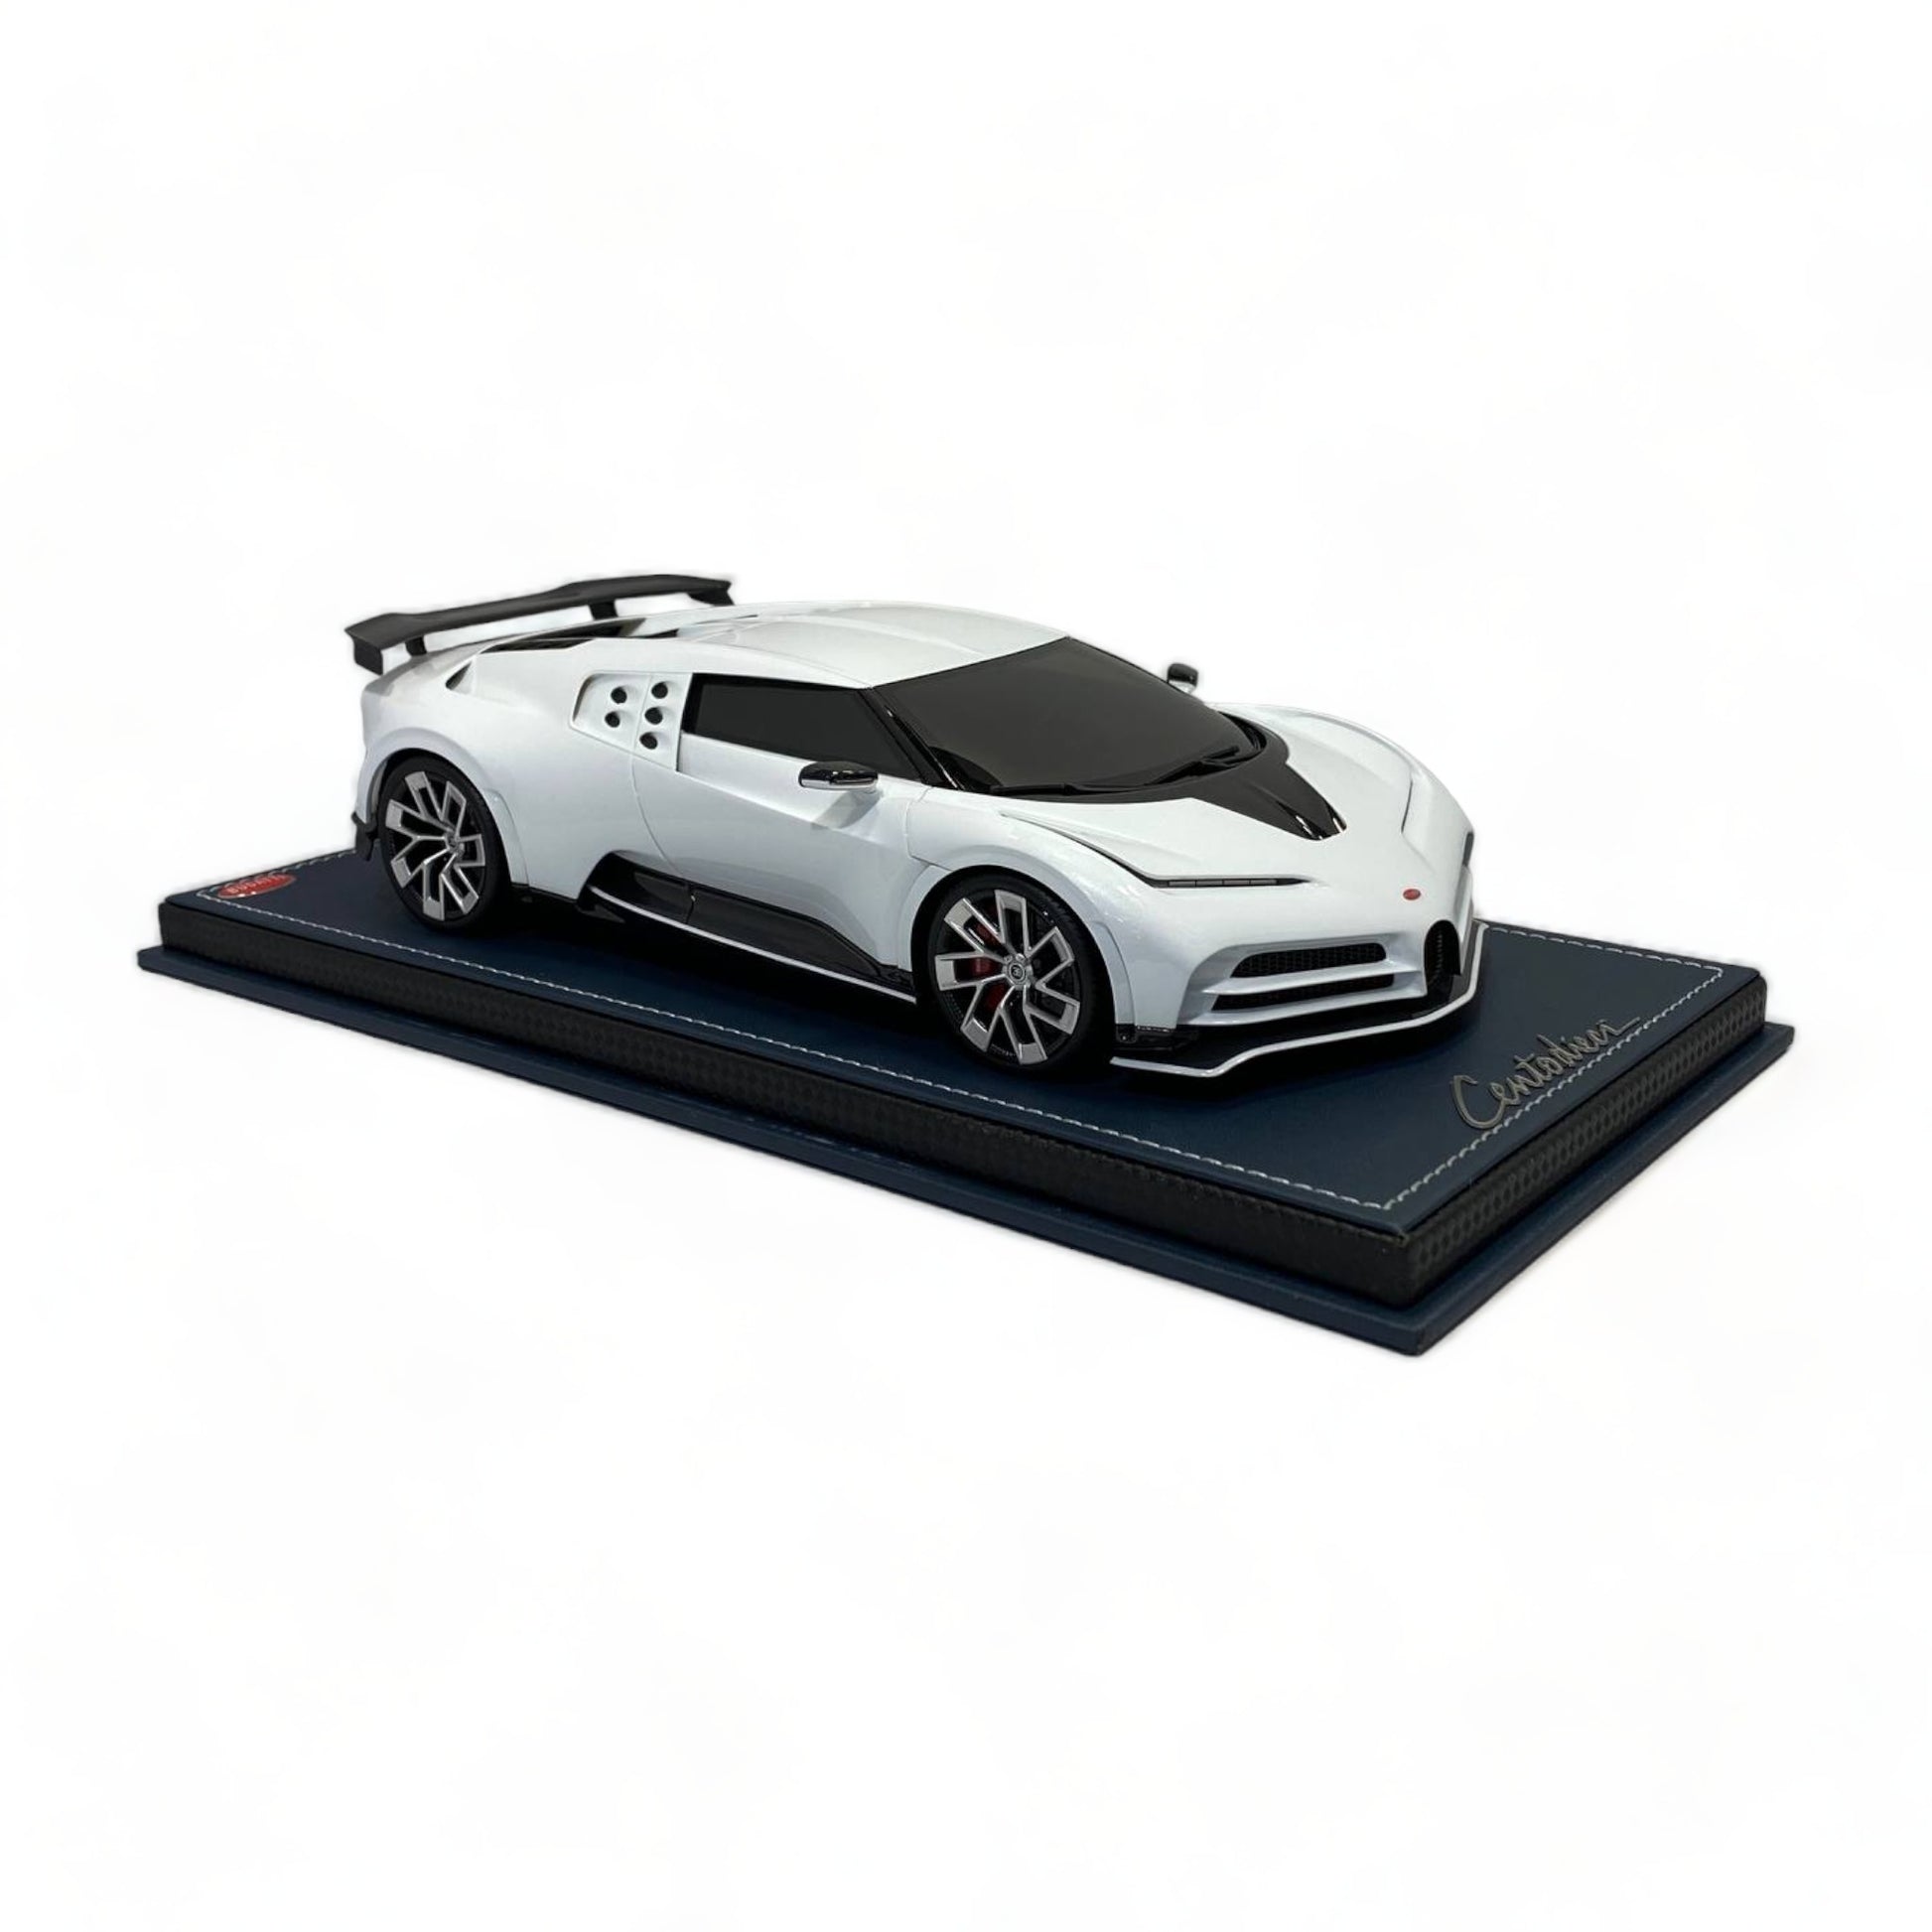 1/18 Bugatti Centodieci White by MR Collection Model Car|Sold in Dturman.com Dubai UAE.